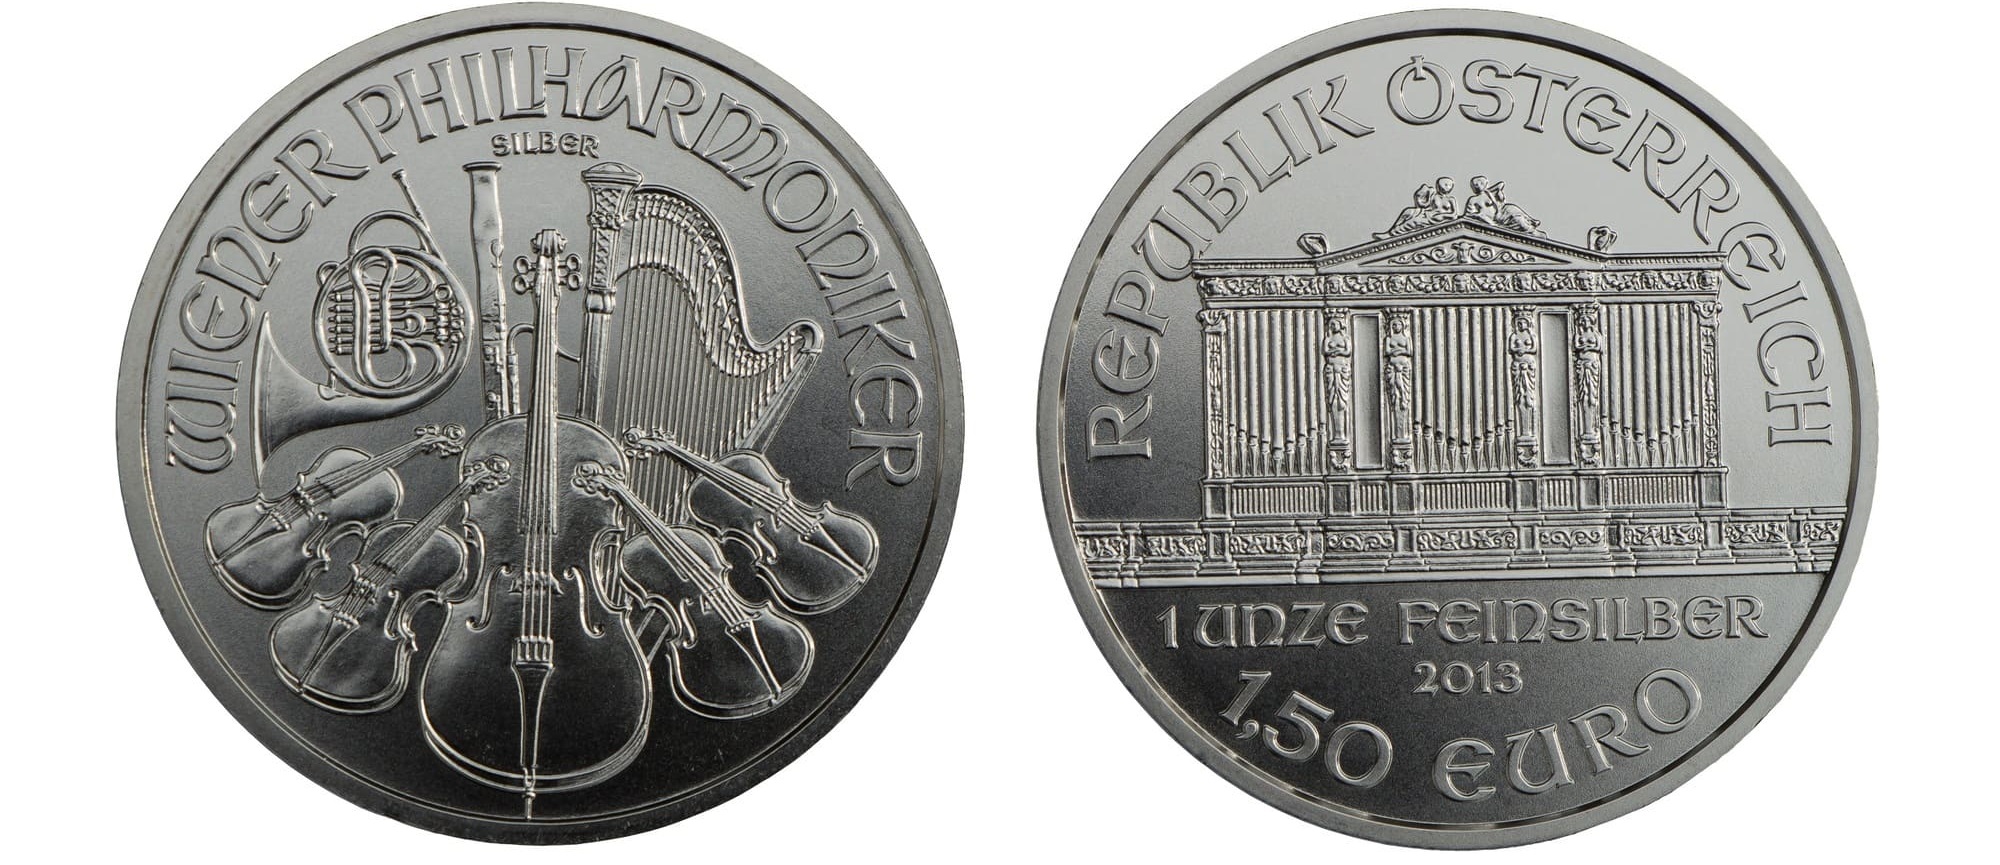 A Vienna Philharmonic silver coin